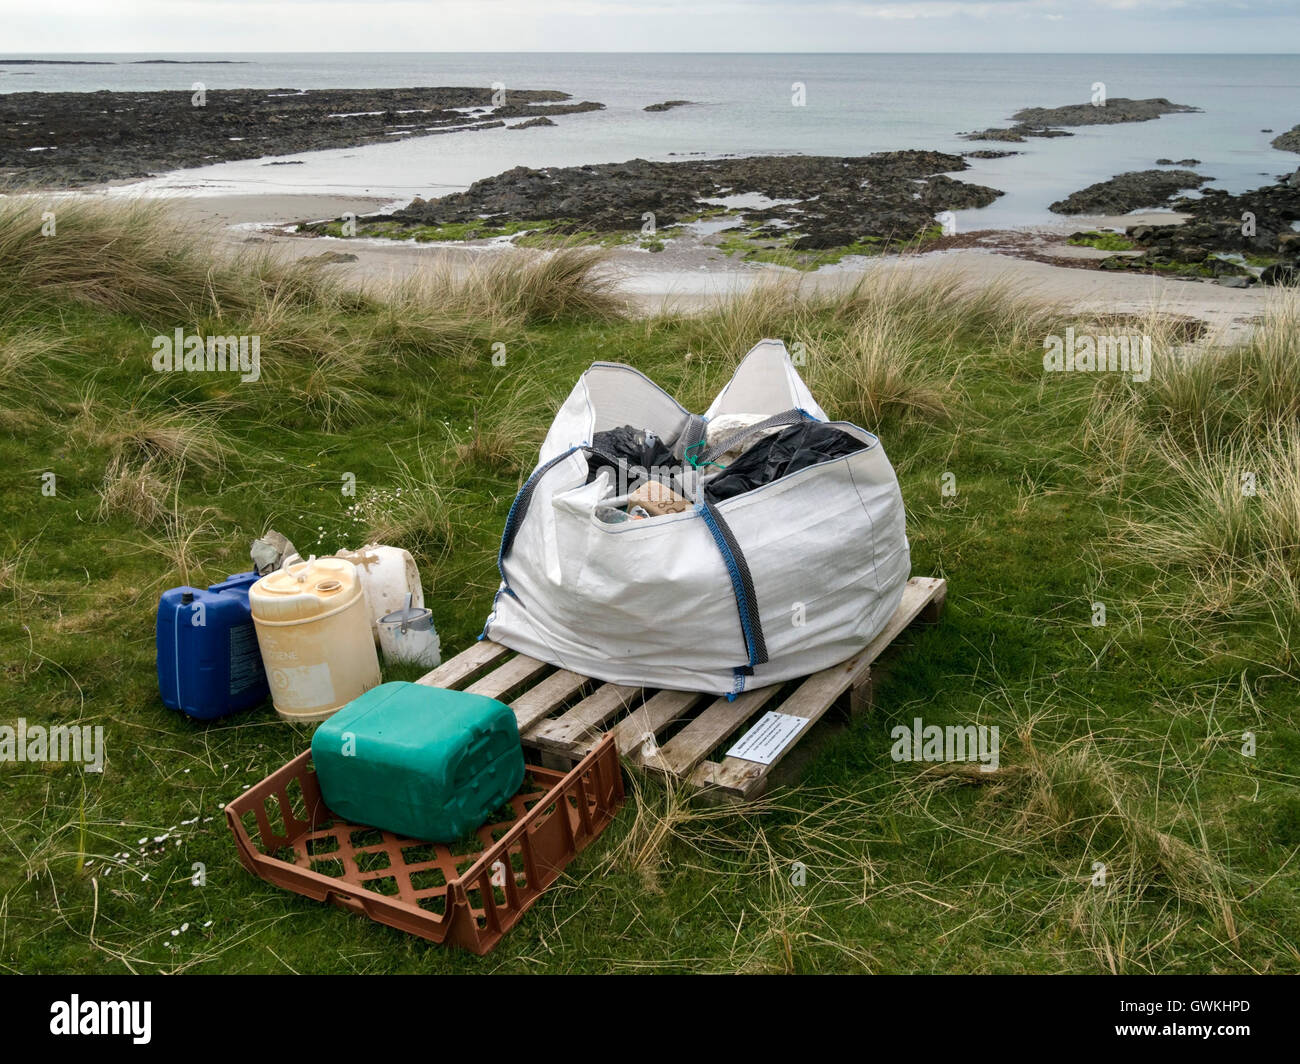 Meeresmüll Sammelstelle Strand, Plaide Mhor, Ardskenish, Insel Colonsay, Schottland, Vereinigtes Königreich. Stockfoto